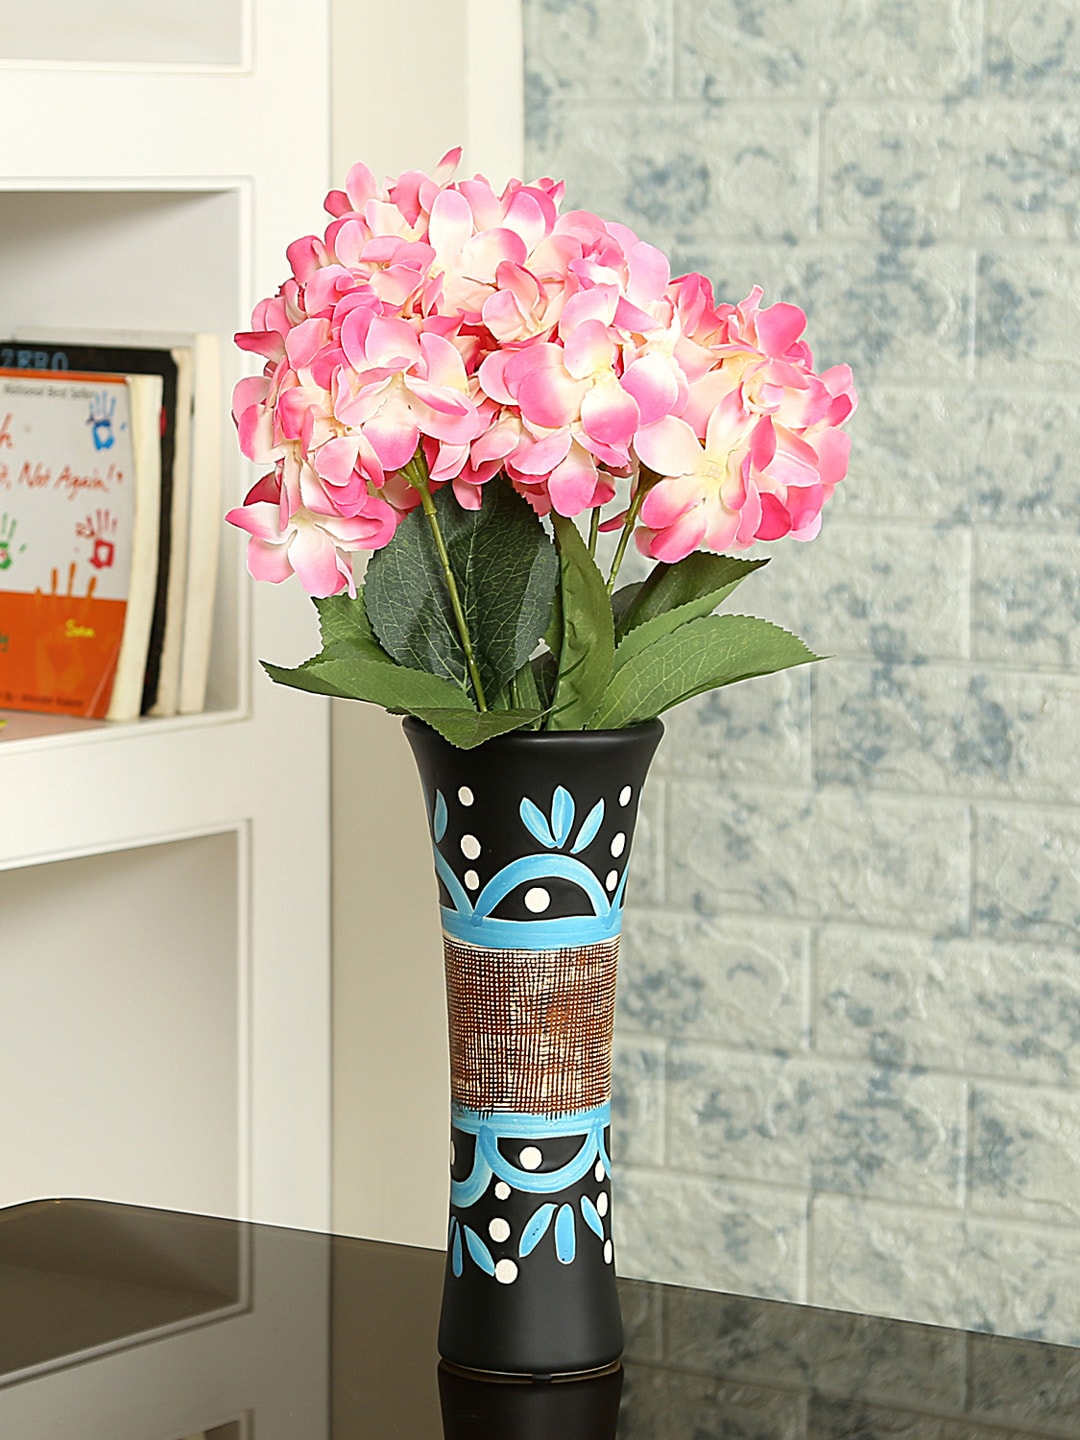 Aapno Rajasthan Black & Blue Ceramic Flower Vase Price in India